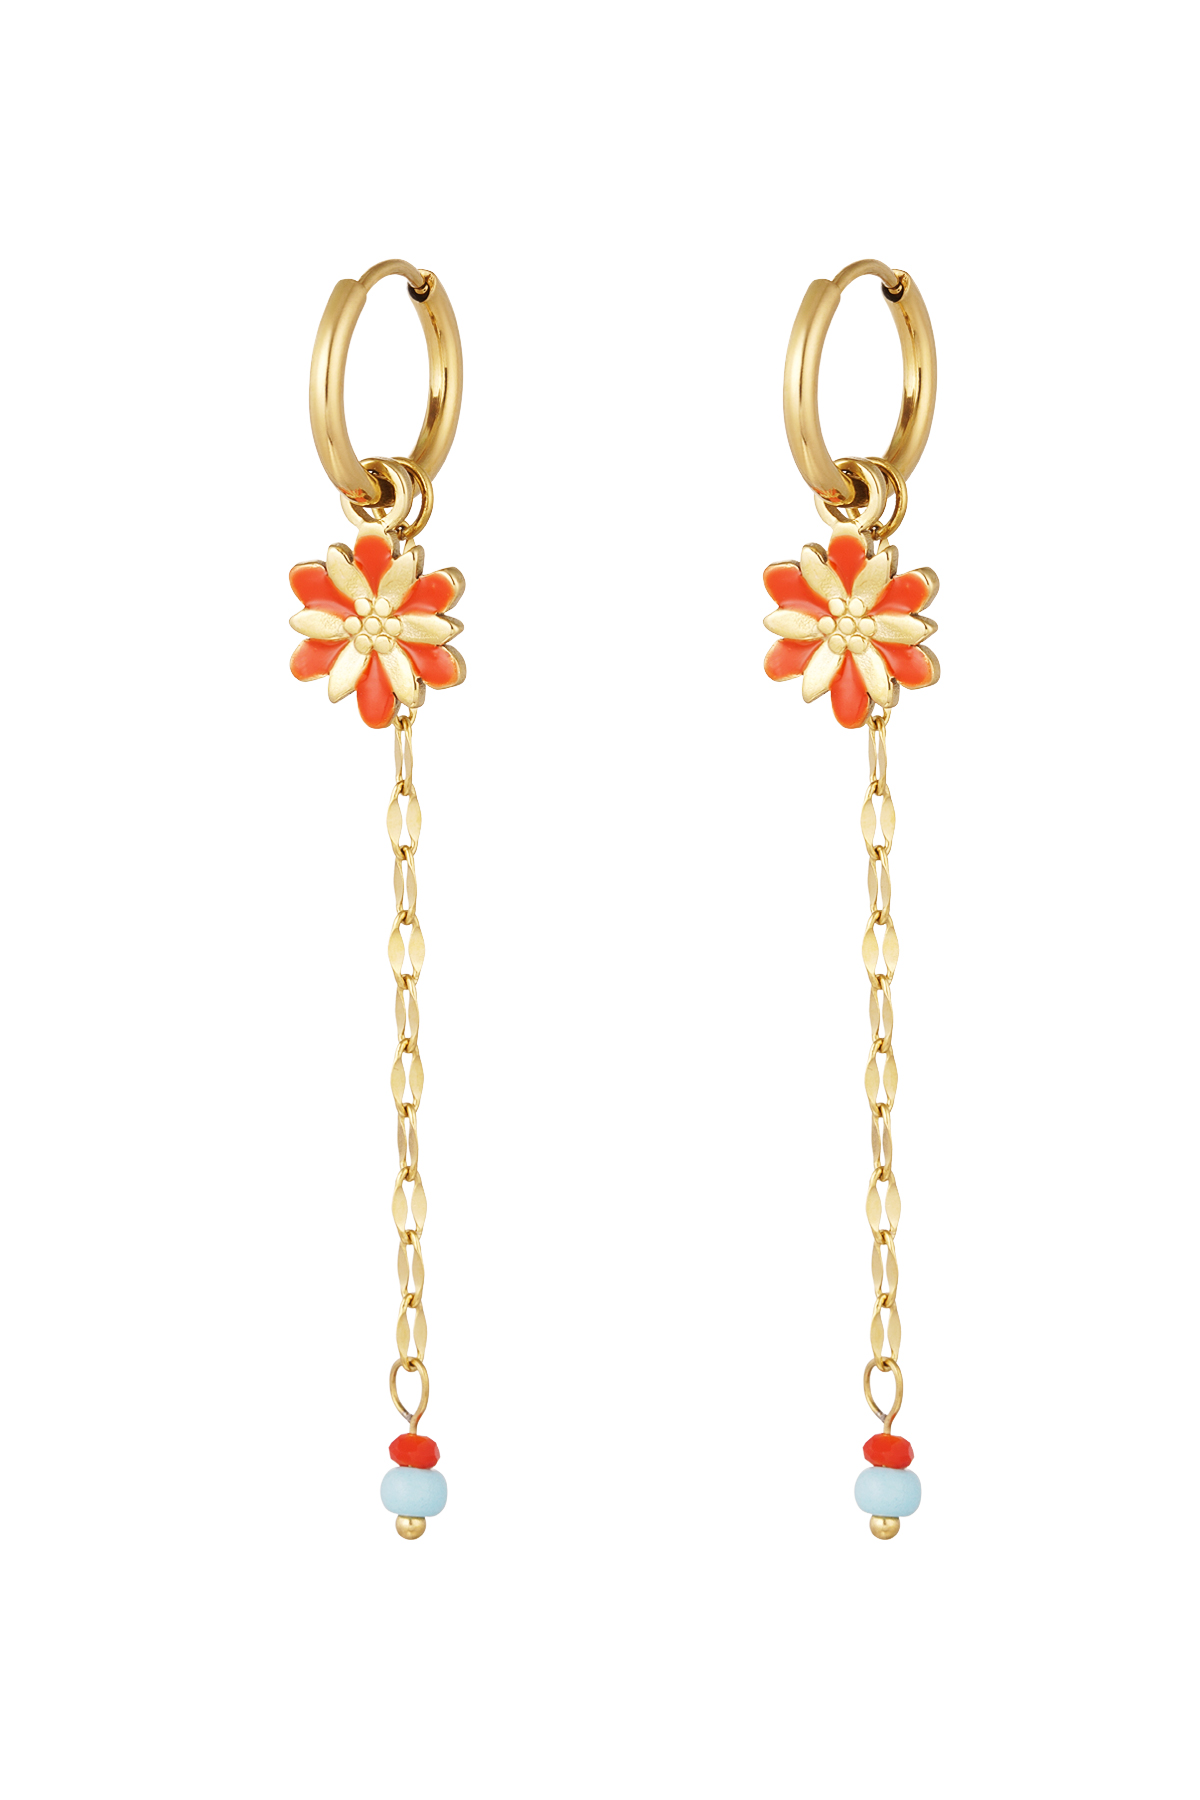 Ohrring Blume mit Kette und Perlen rot - gold